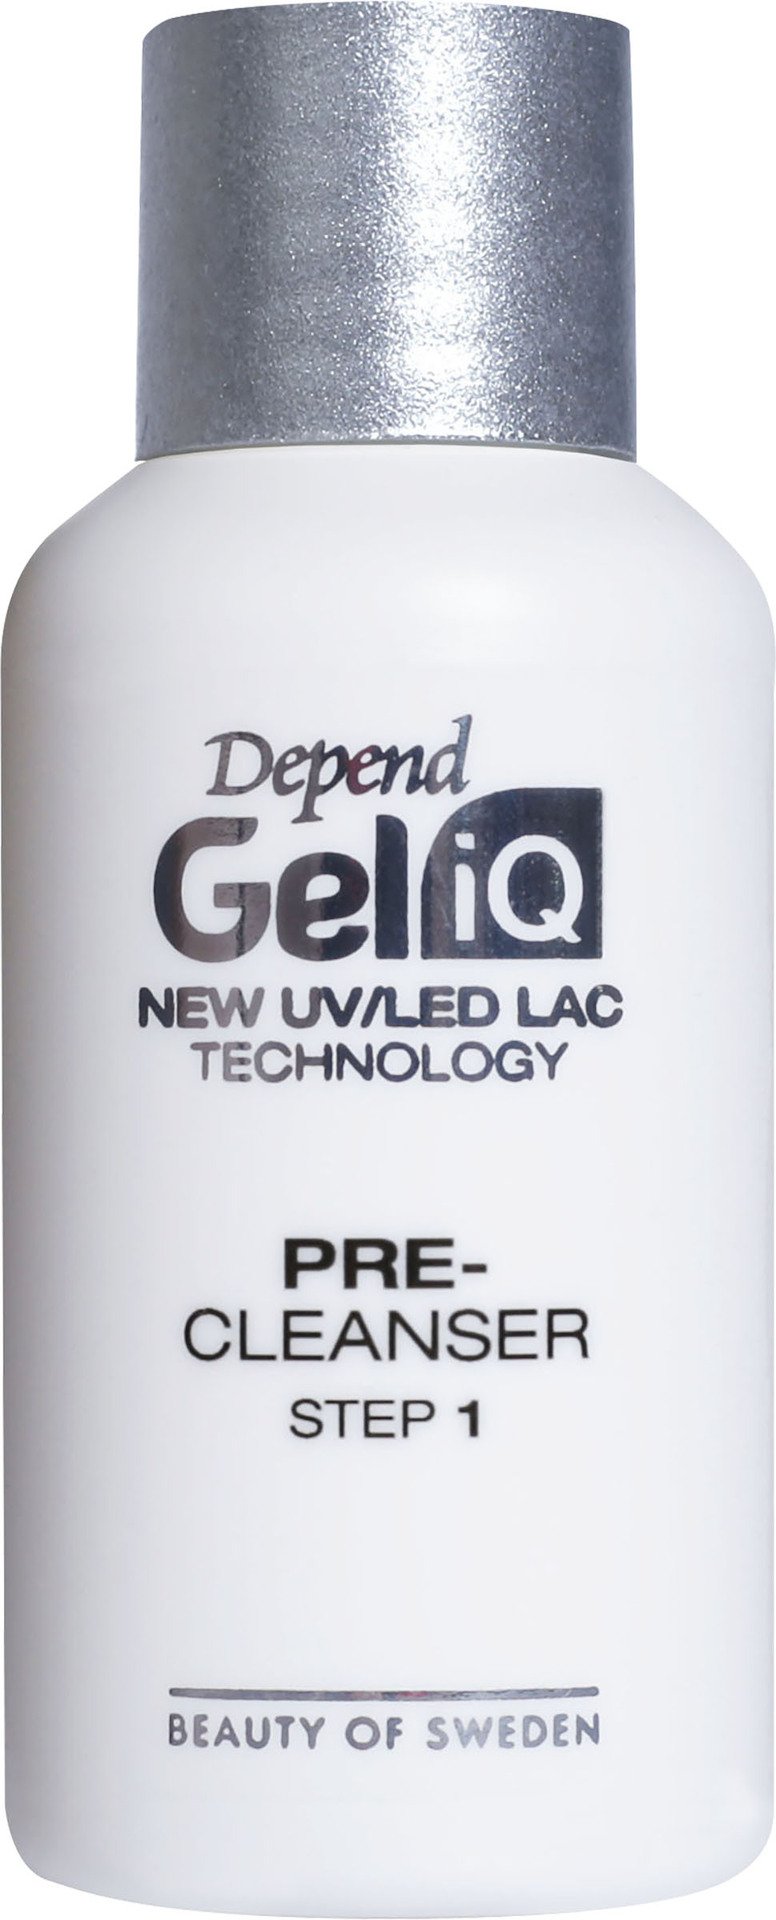 Depend Gel iQ Pre-Cleanser Step1 35ml